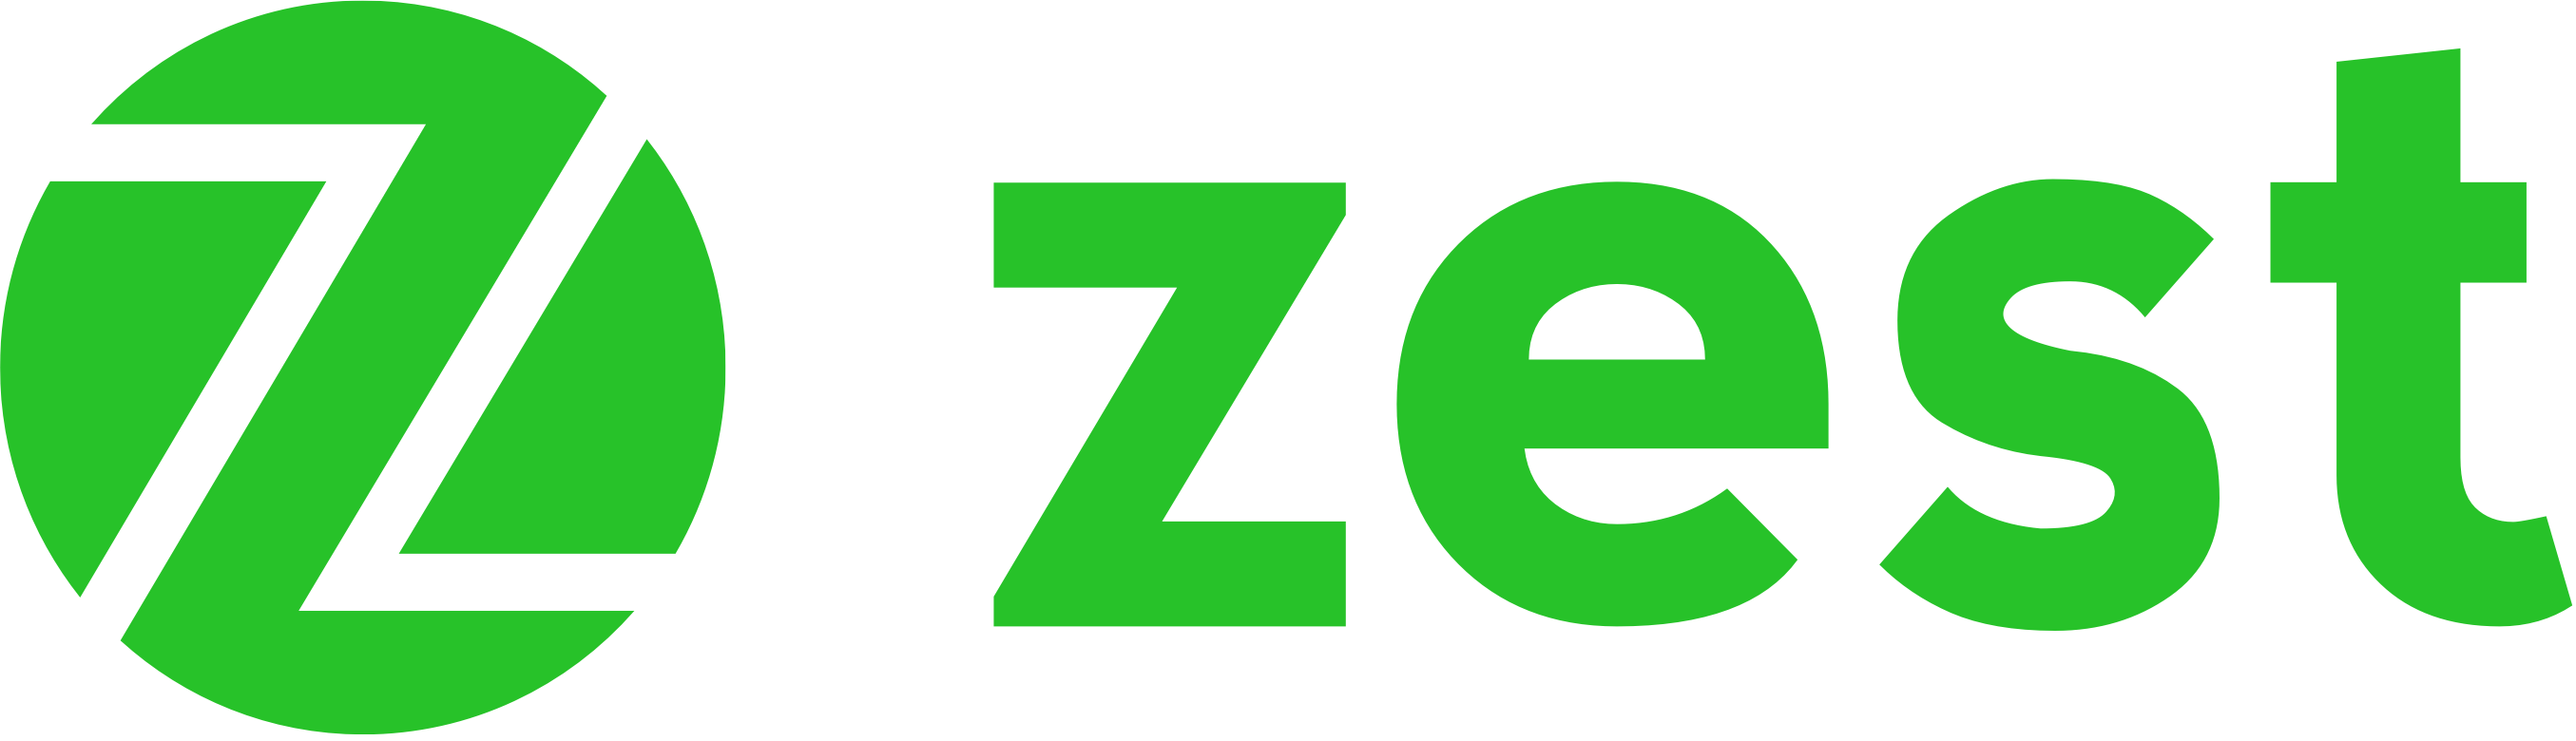 Zest_logo